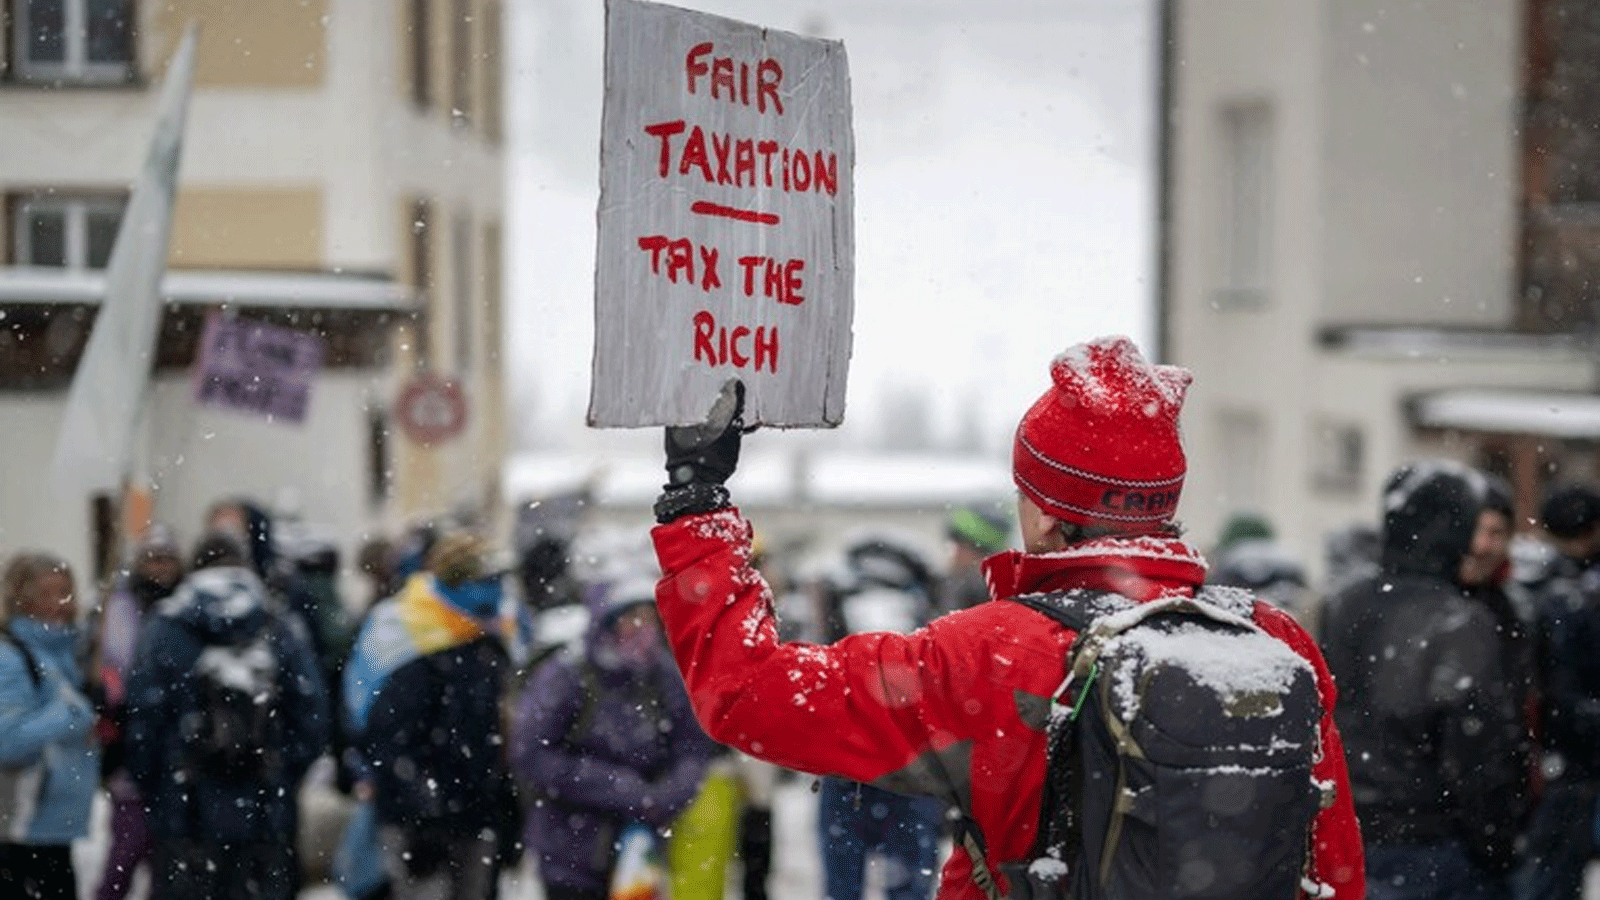 نشطاء الحزب الاشتراكي عشية المنتدى الاقتصادي العالمي في دافوس، سويسرا، يوم الأحد 15 كانون الثاني\ يناير 2023